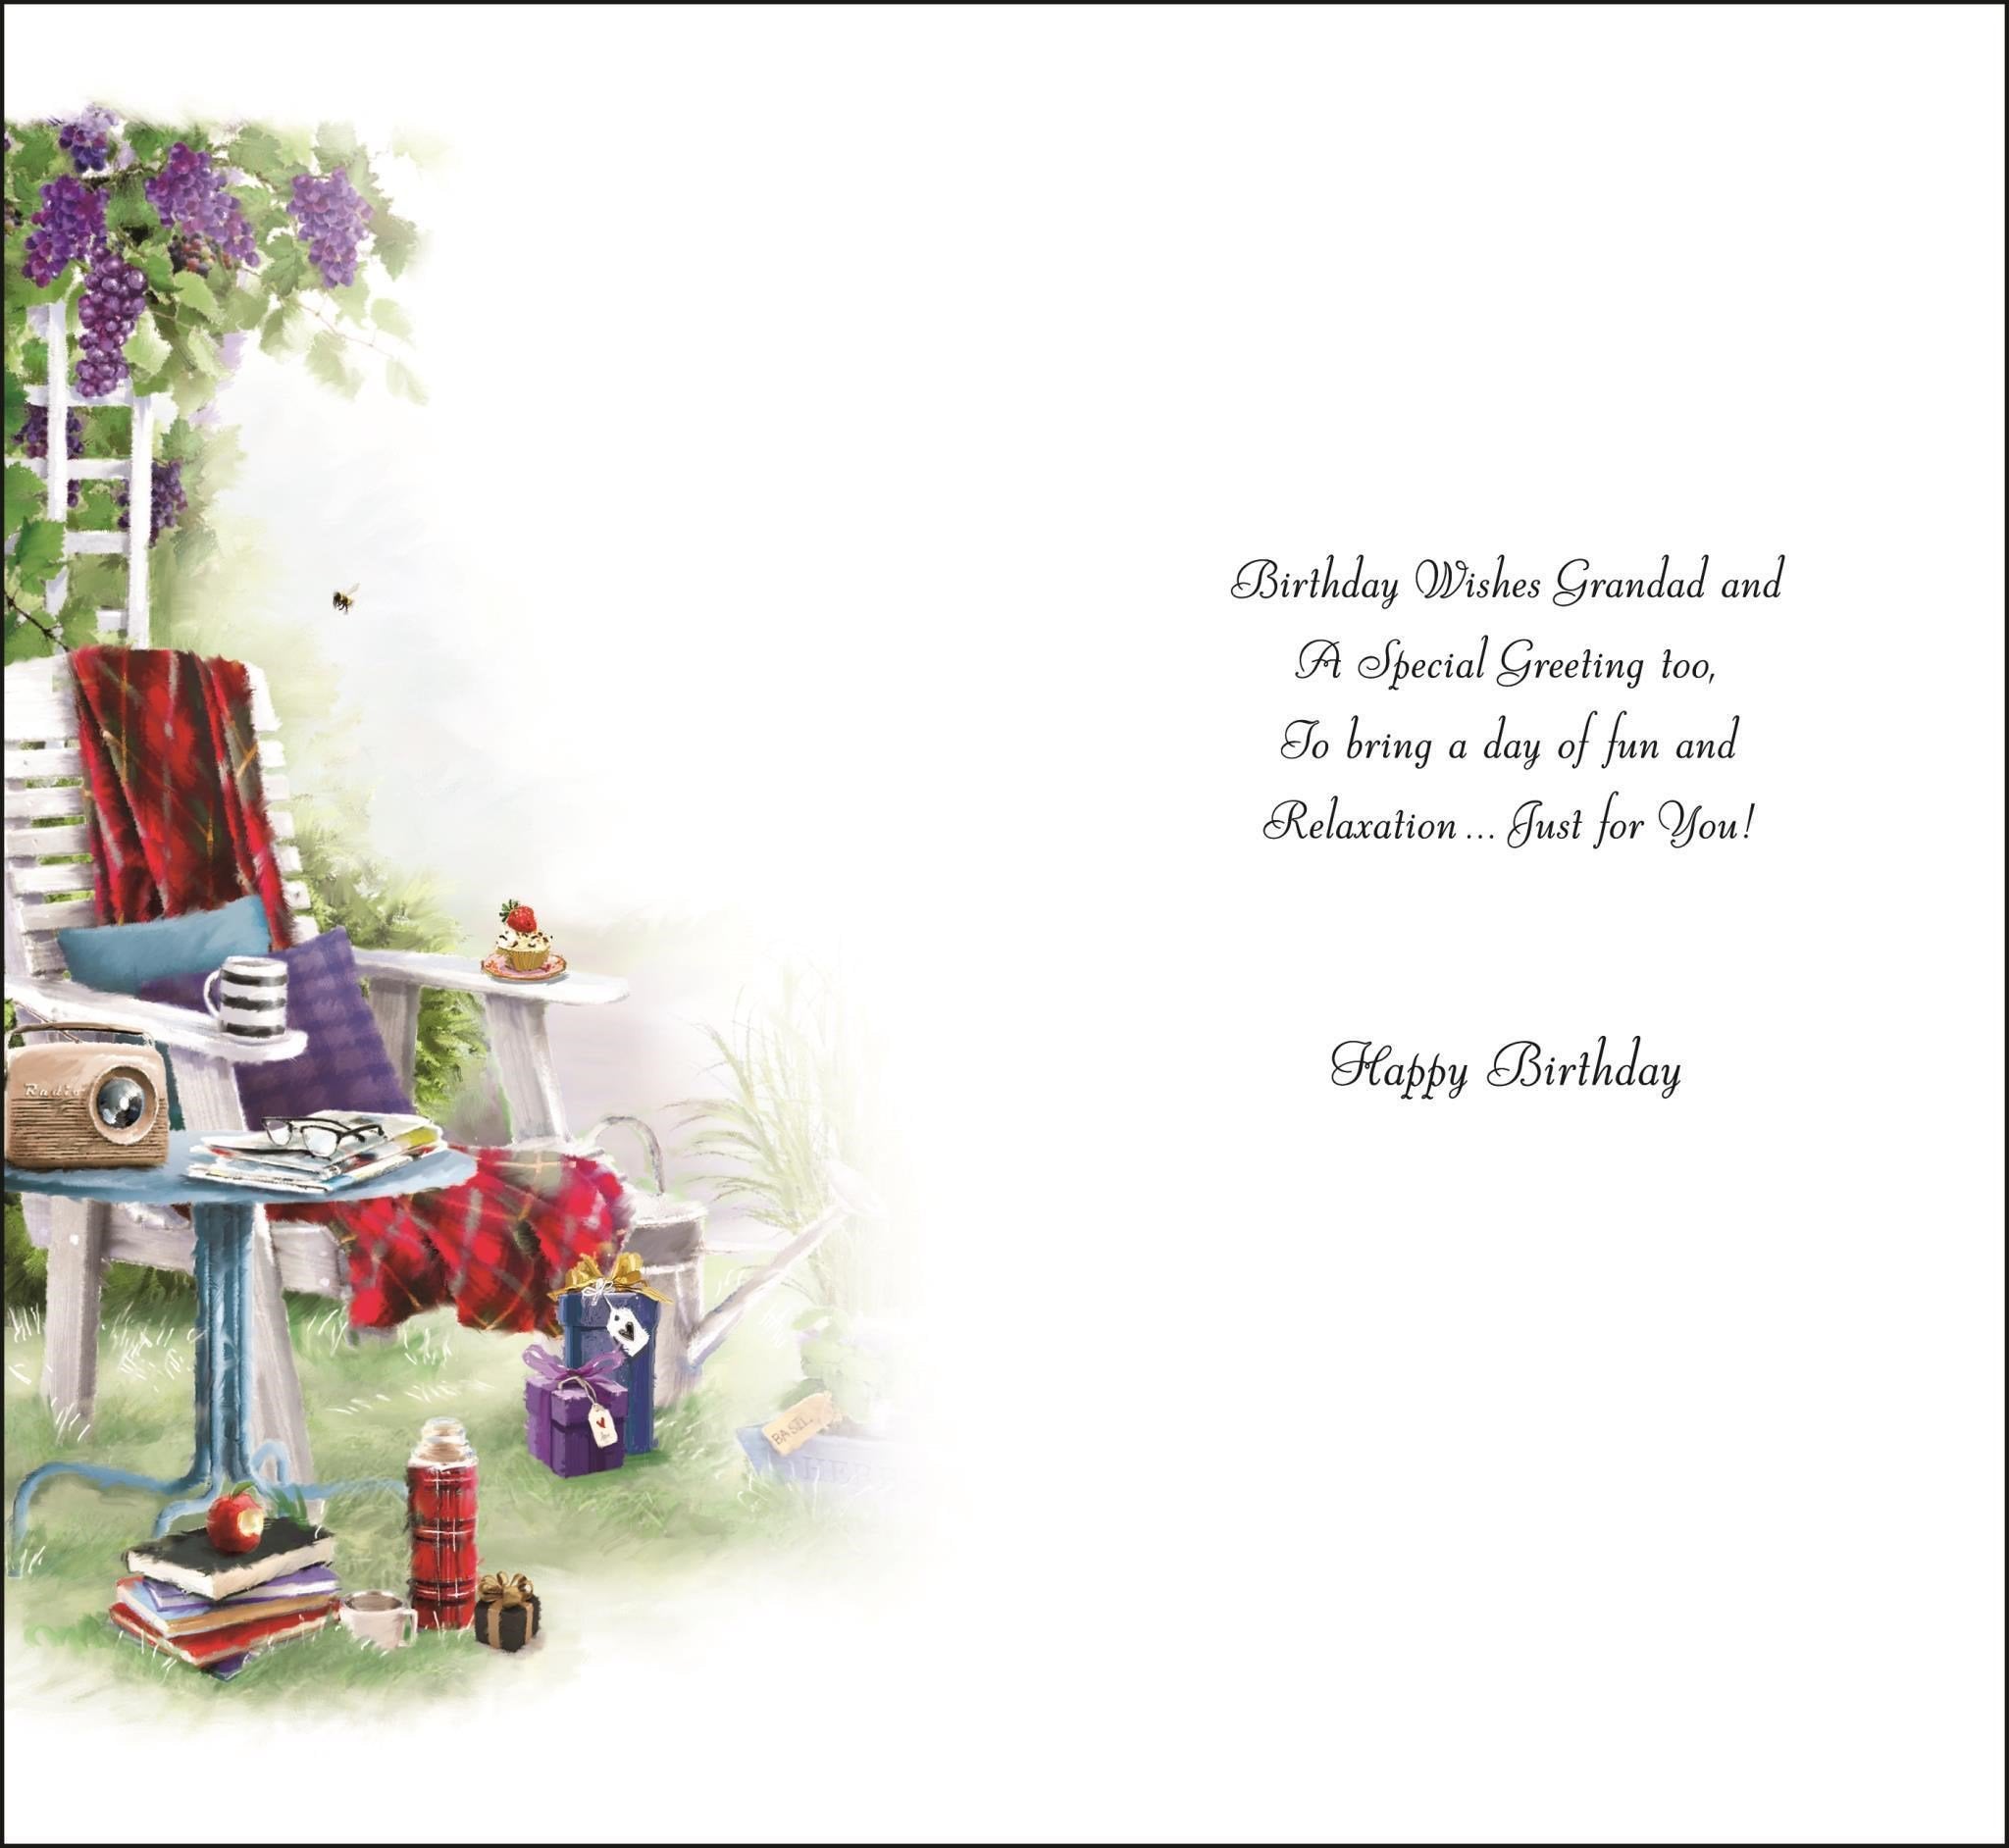 Inside of Grandad Lots of Love Birthday Greetings Card